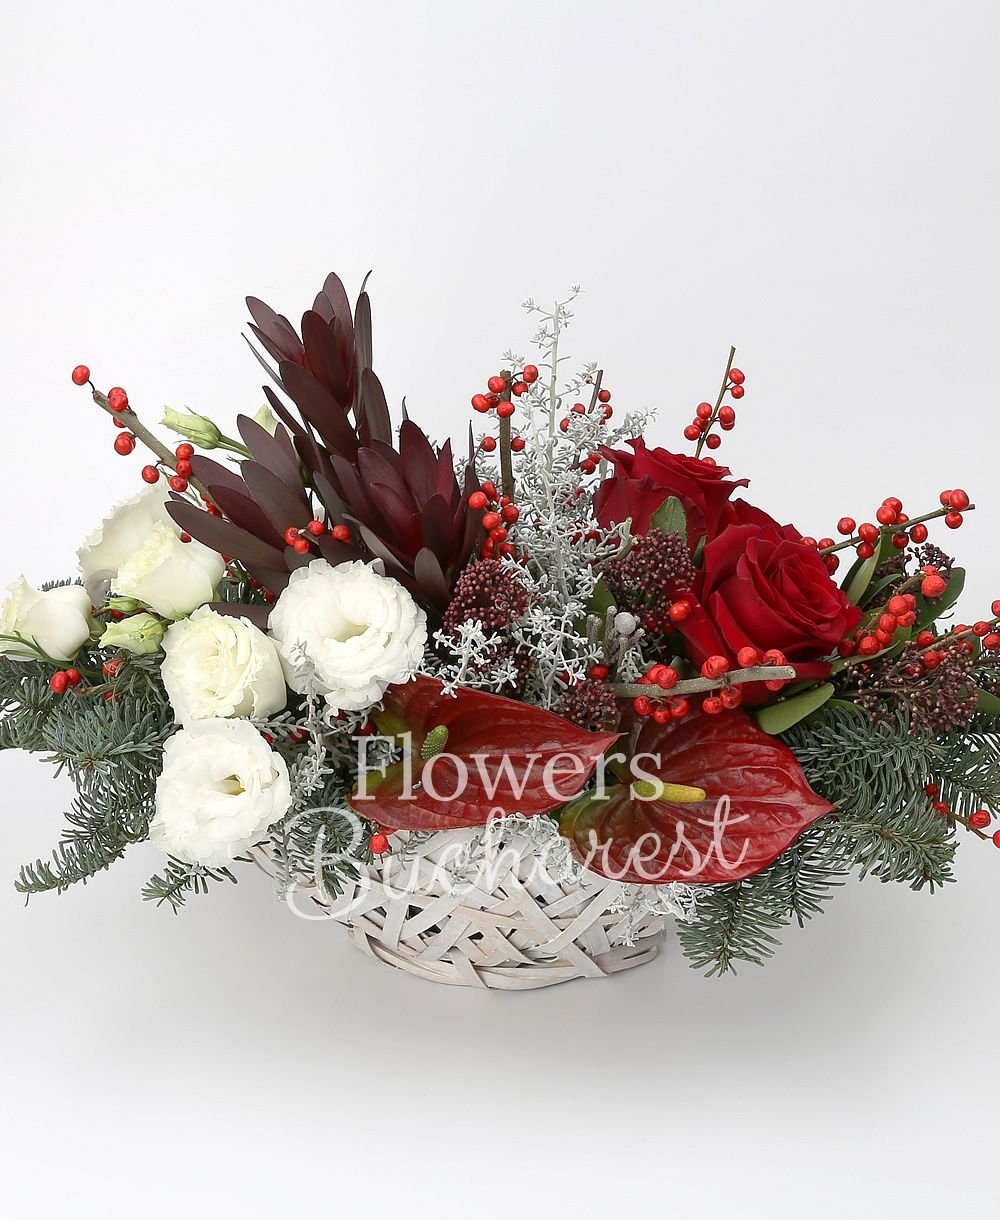 3 red roses, 2 ilex, 2 red anthurium, 3 leucadendron, 3 white lisianthus, 2 schimia, greenery